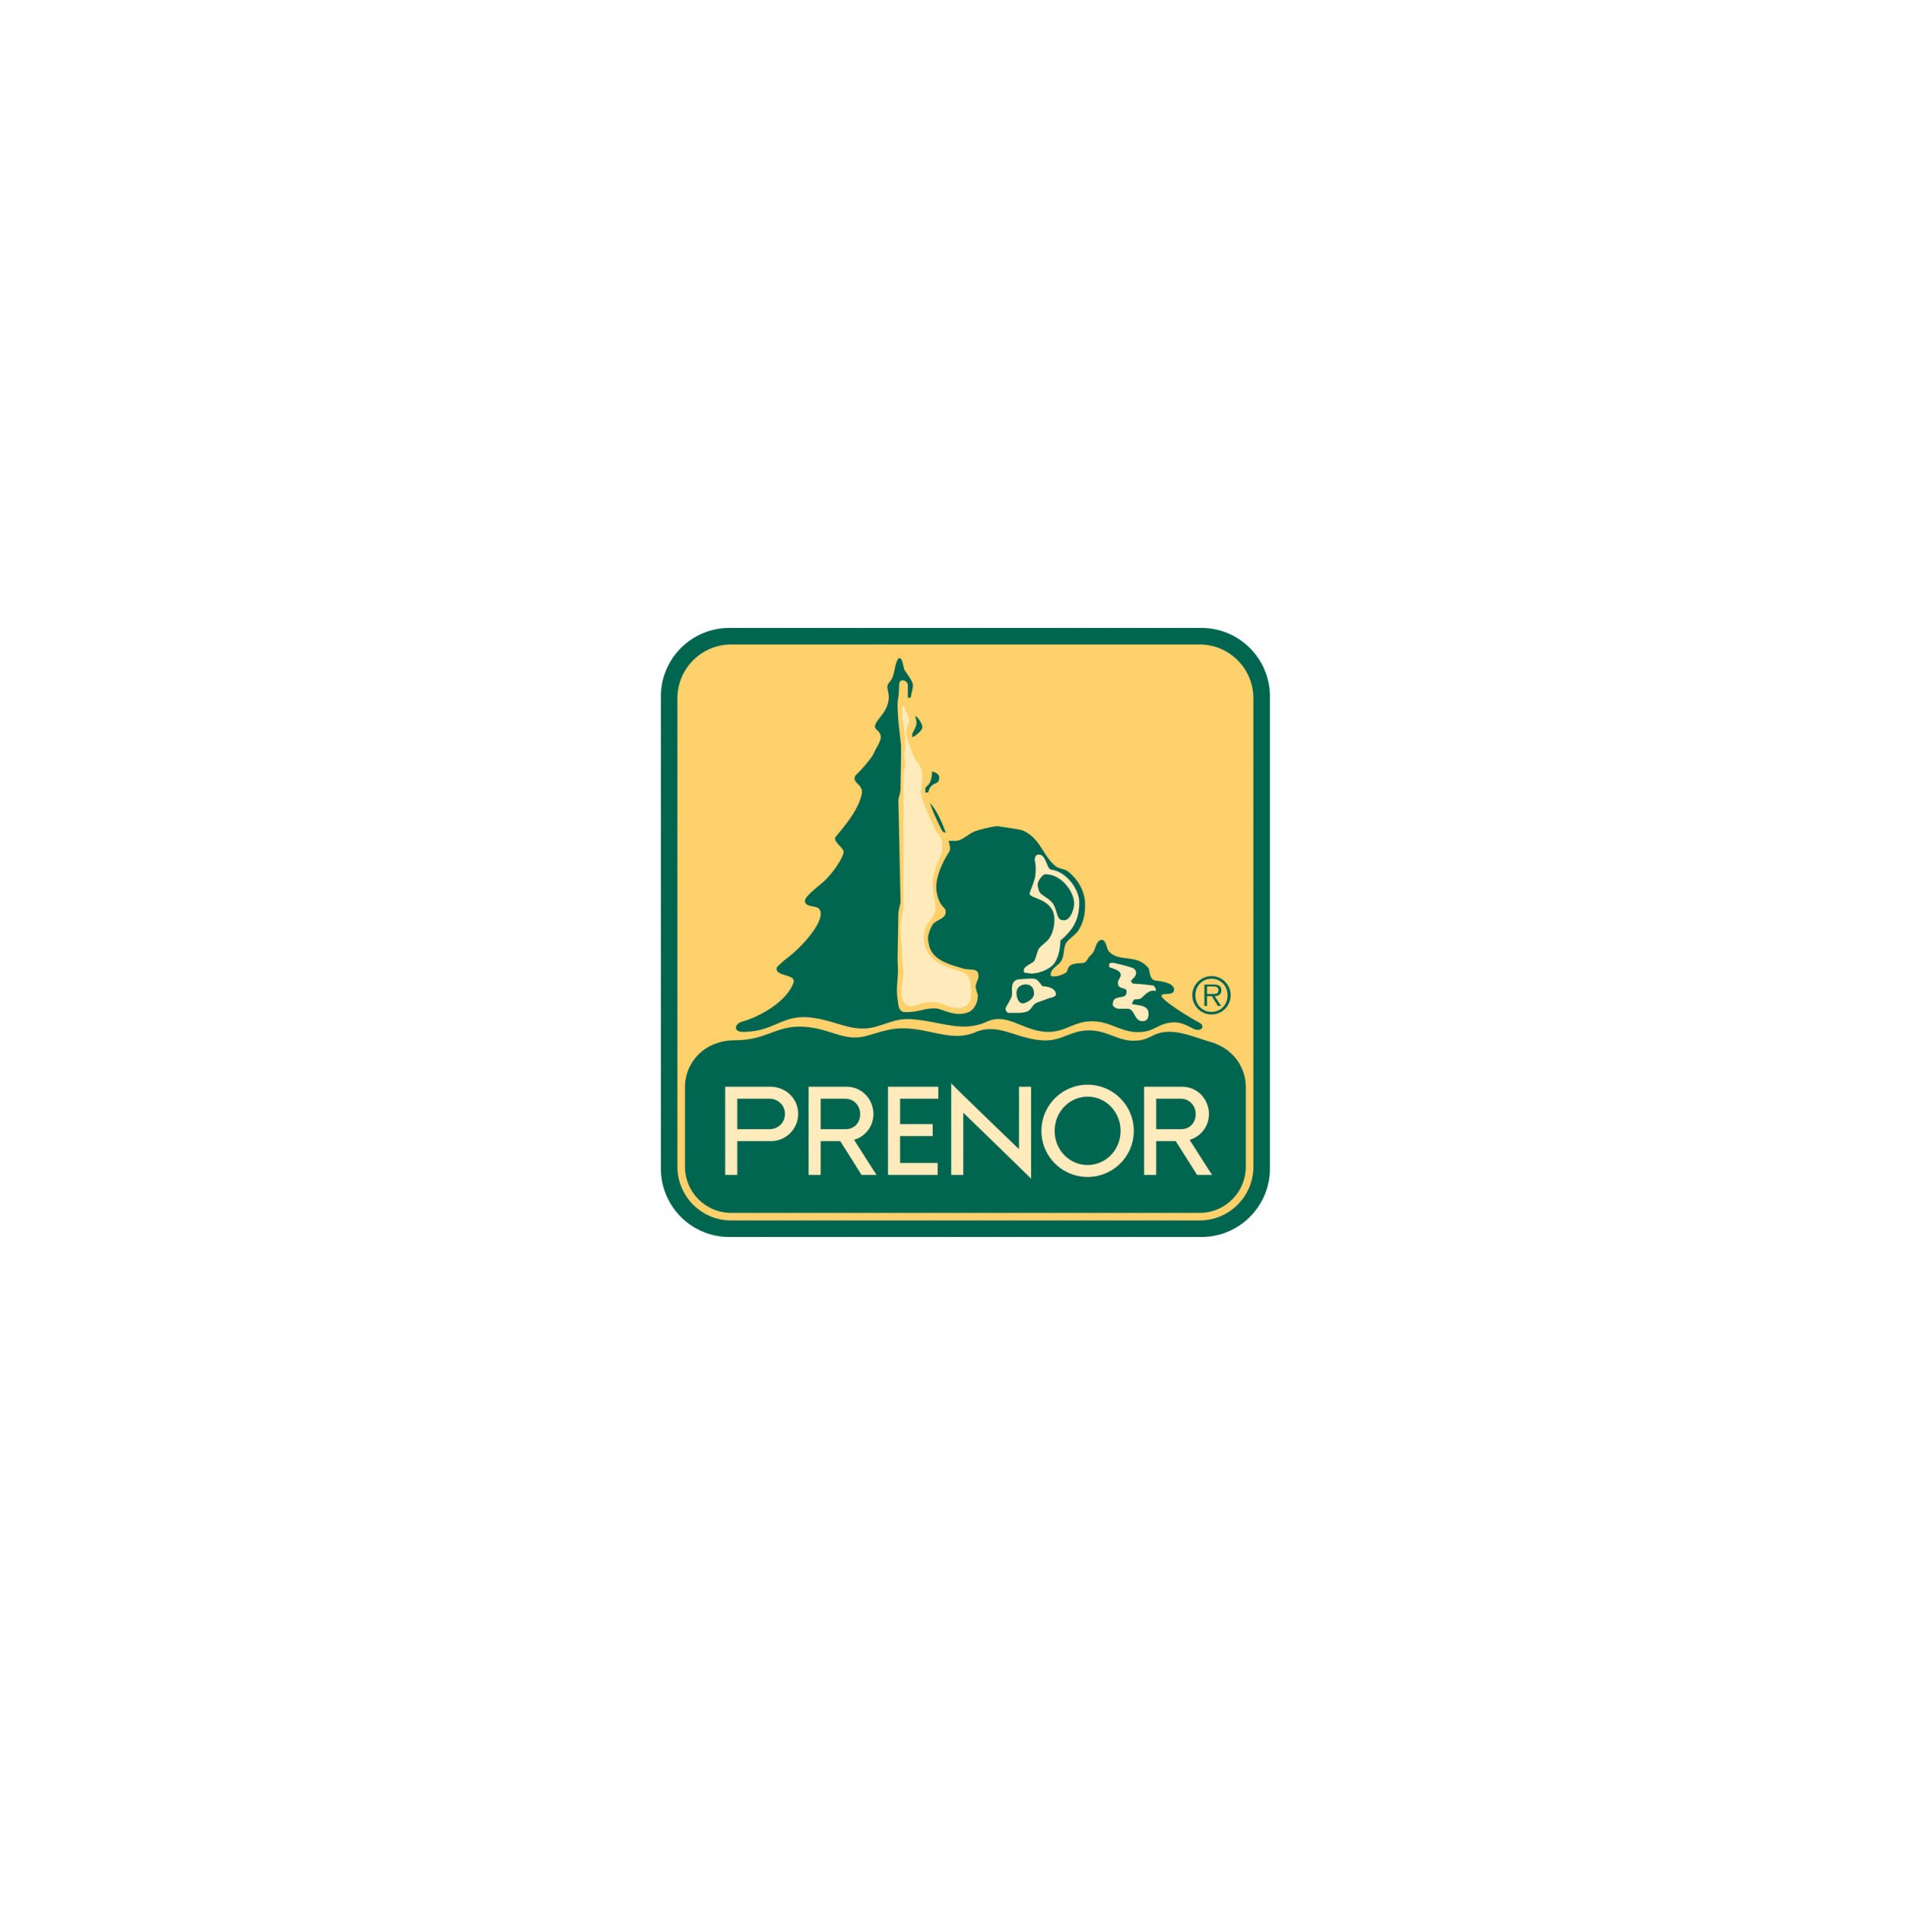 Prenor logo